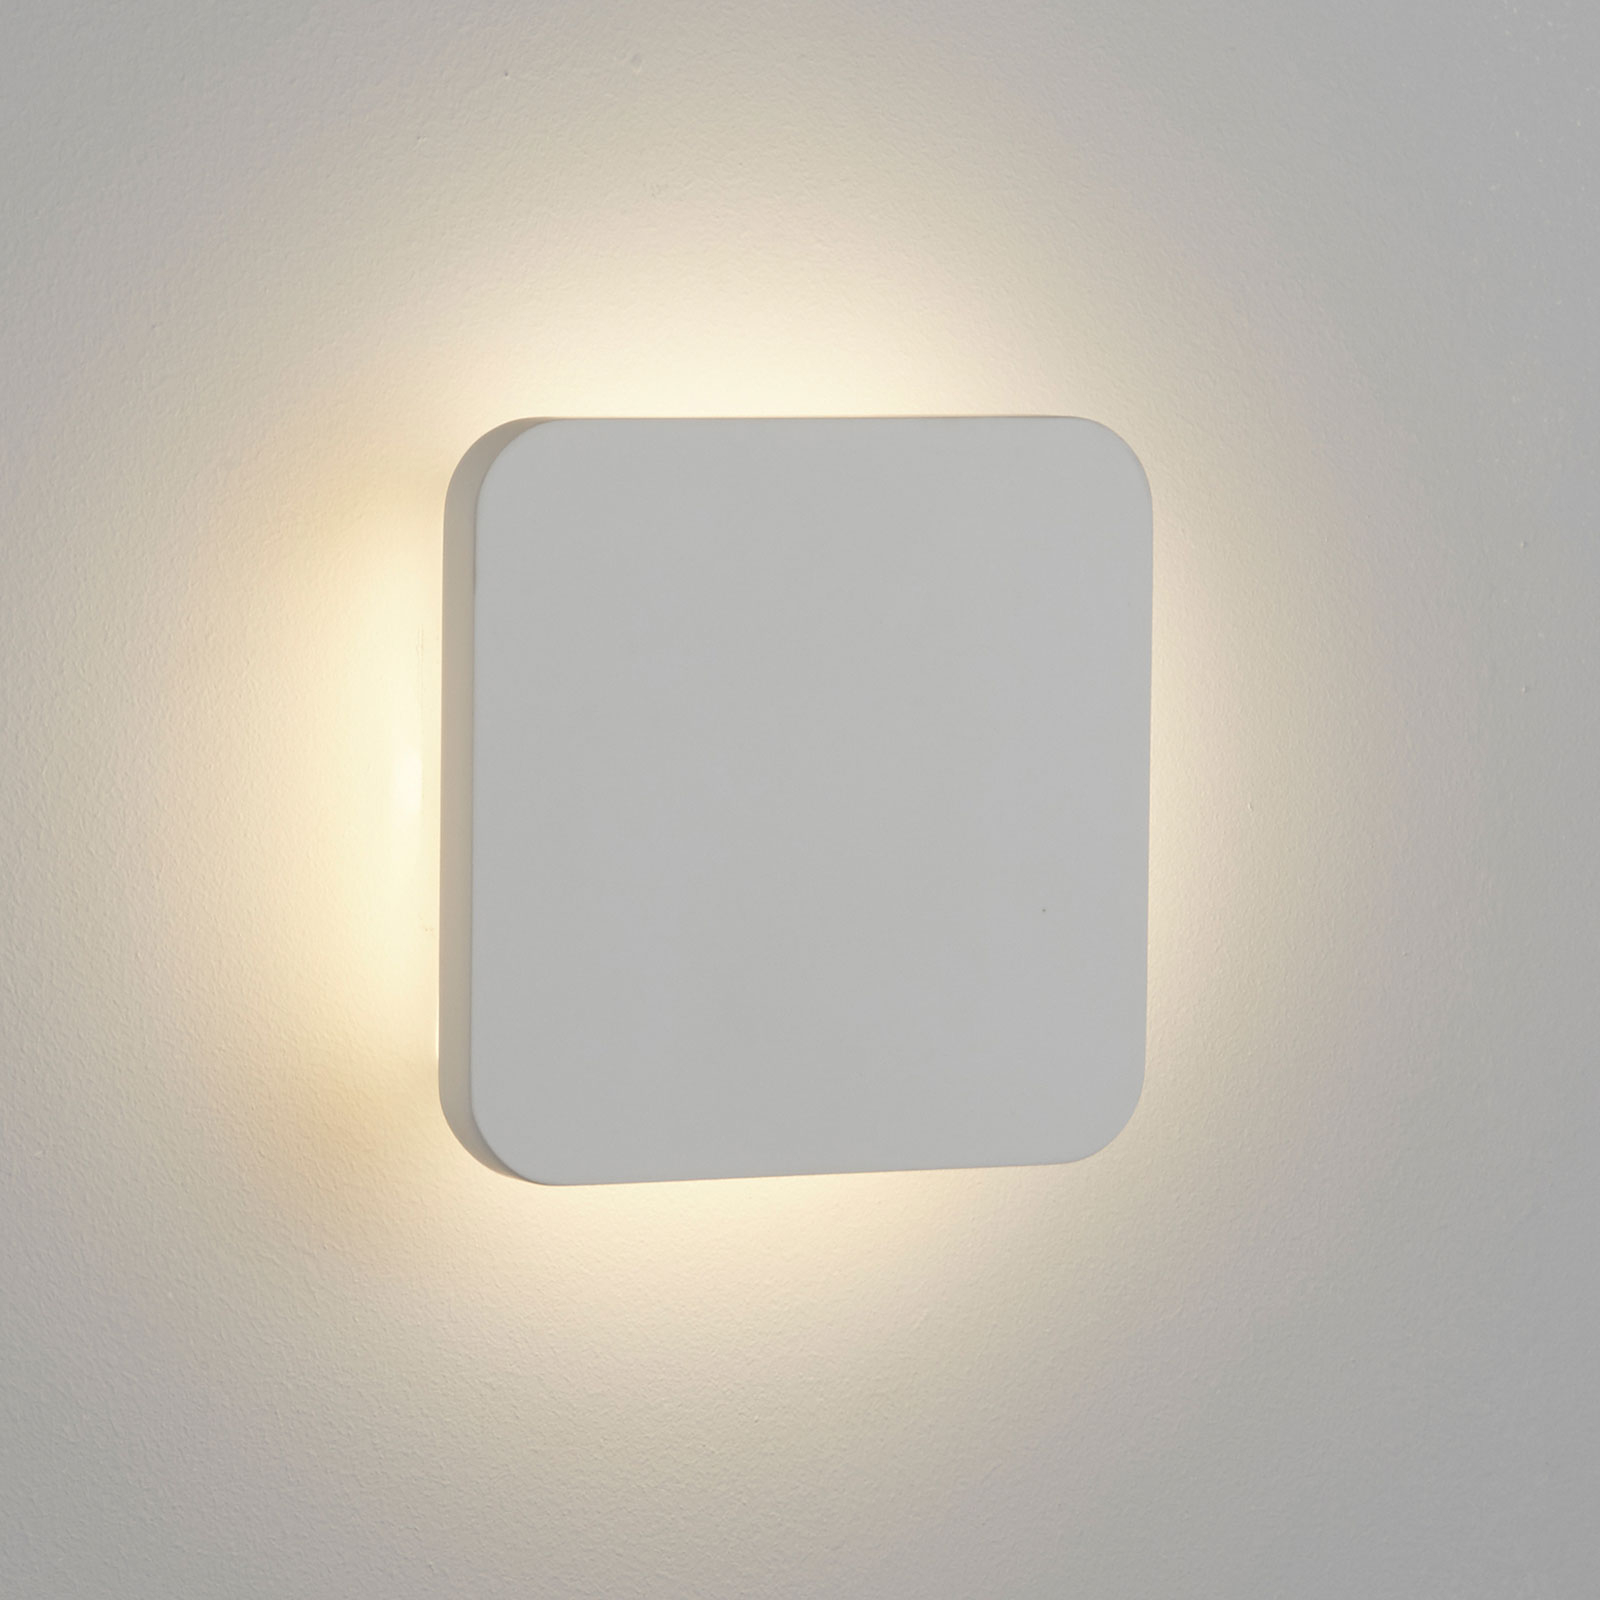 LED-vegglampe Gypsum 15x15cm i hvit gips